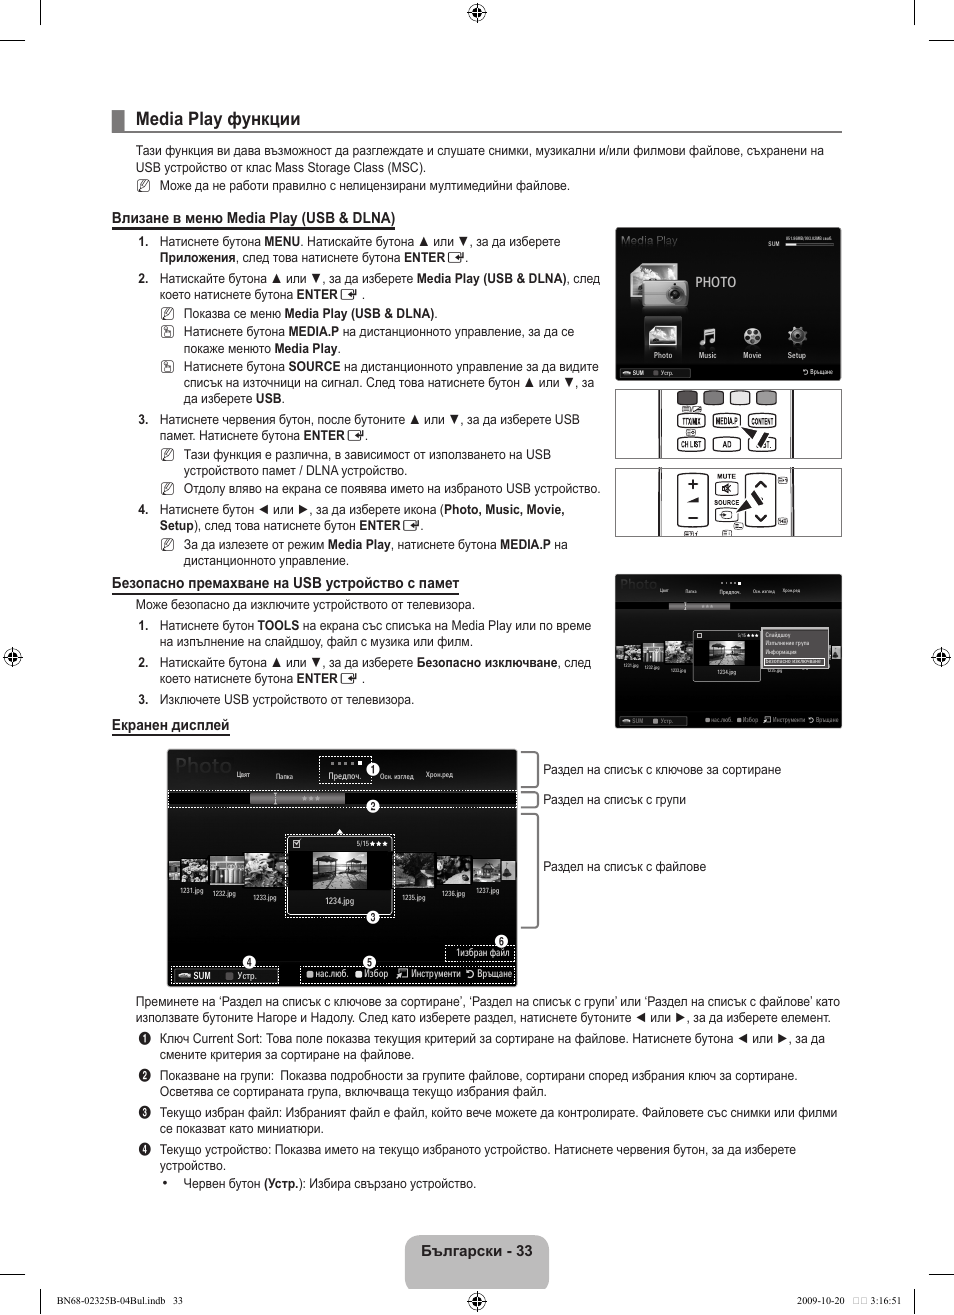 Media play функции, Български, Влизане в меню media play (usb & dlna) | Безопасно премахване на usb устройство с памет, Екранен дисплей, Photo | Samsung LE37B650T2W User Manual | Page 311 / 680